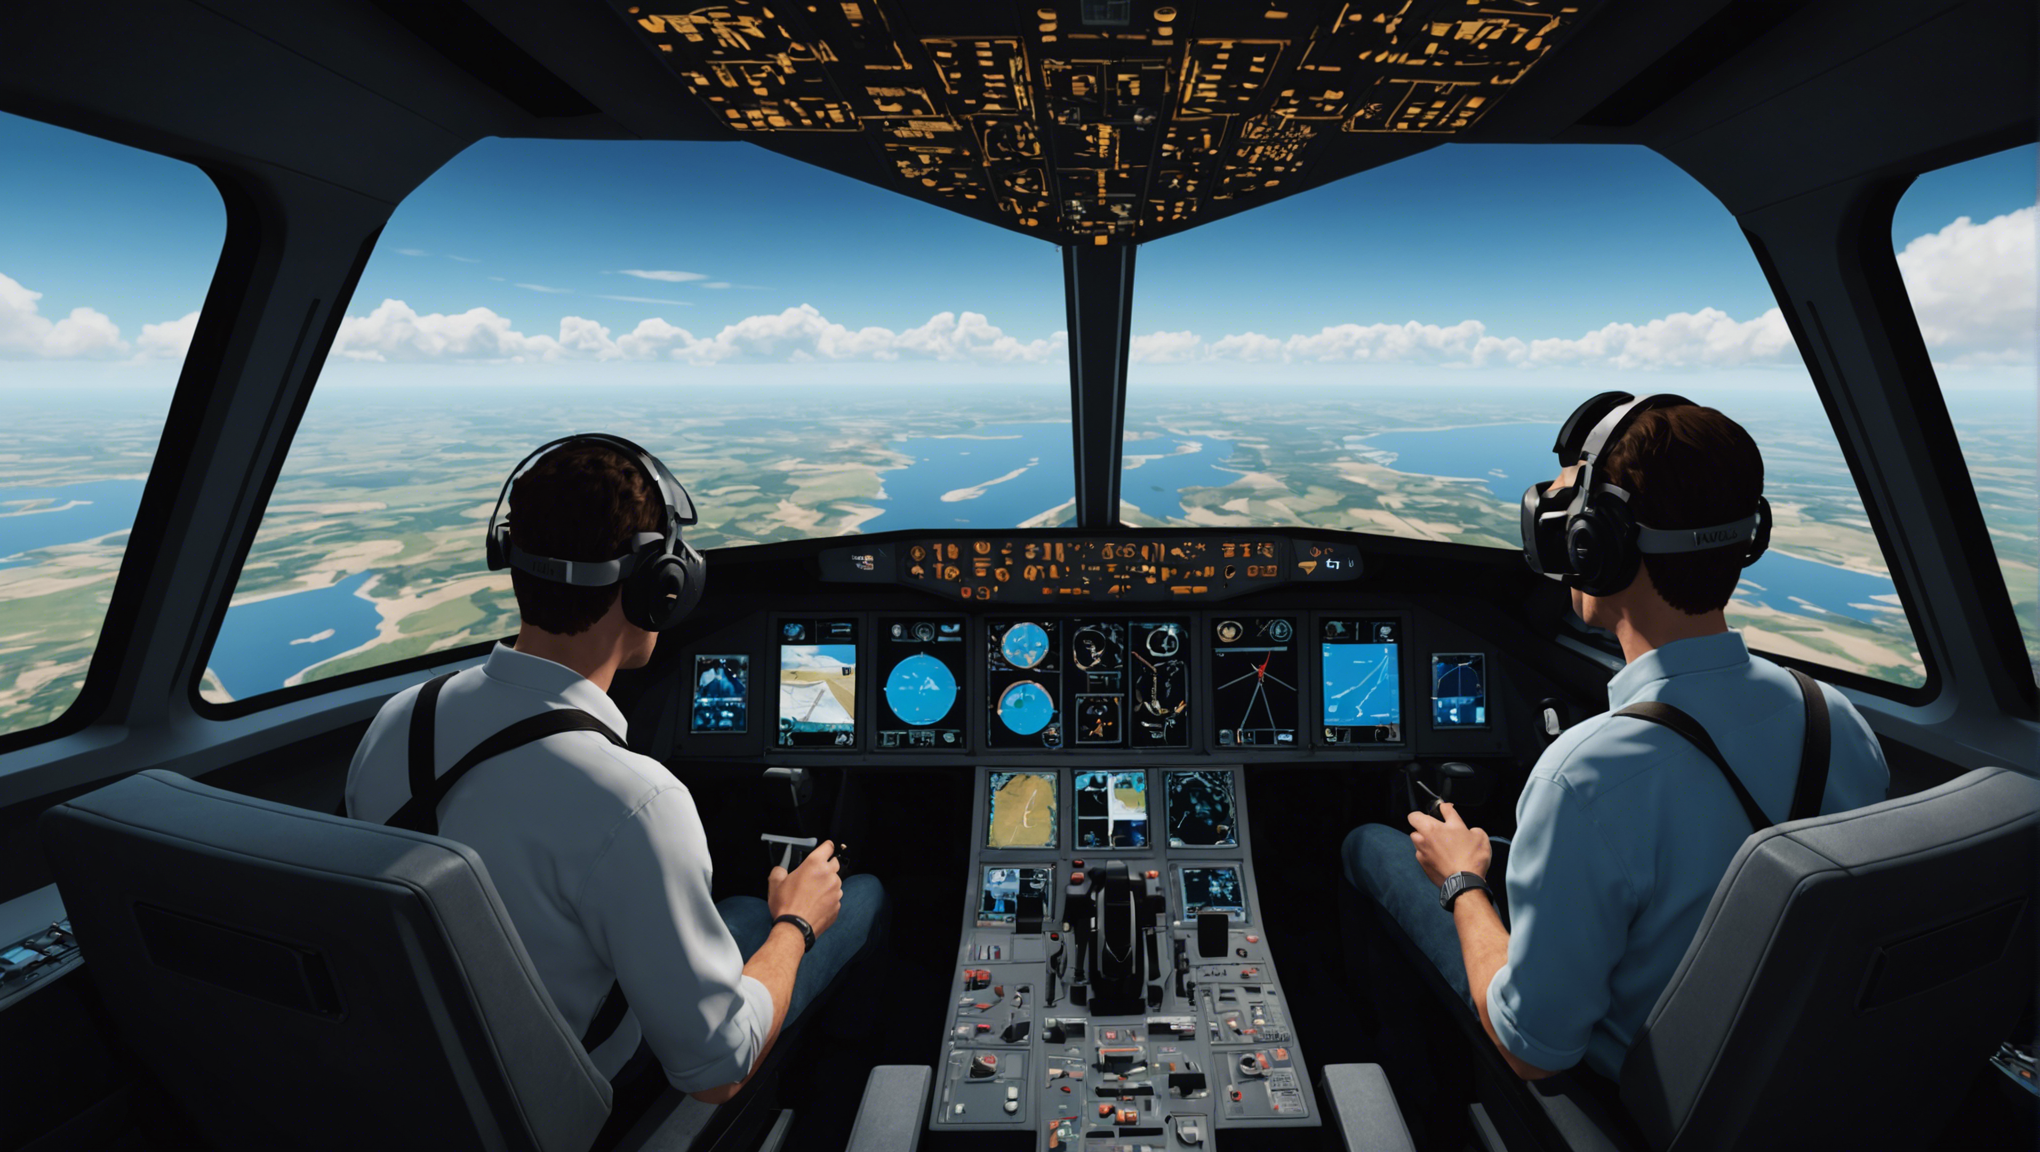 découvrez une expérience immersive de vol hors du commun avec l'animation vr vol flight simulator. pilotez des avions virtuels et ressentez l'excitation de voler comme jamais auparavant.